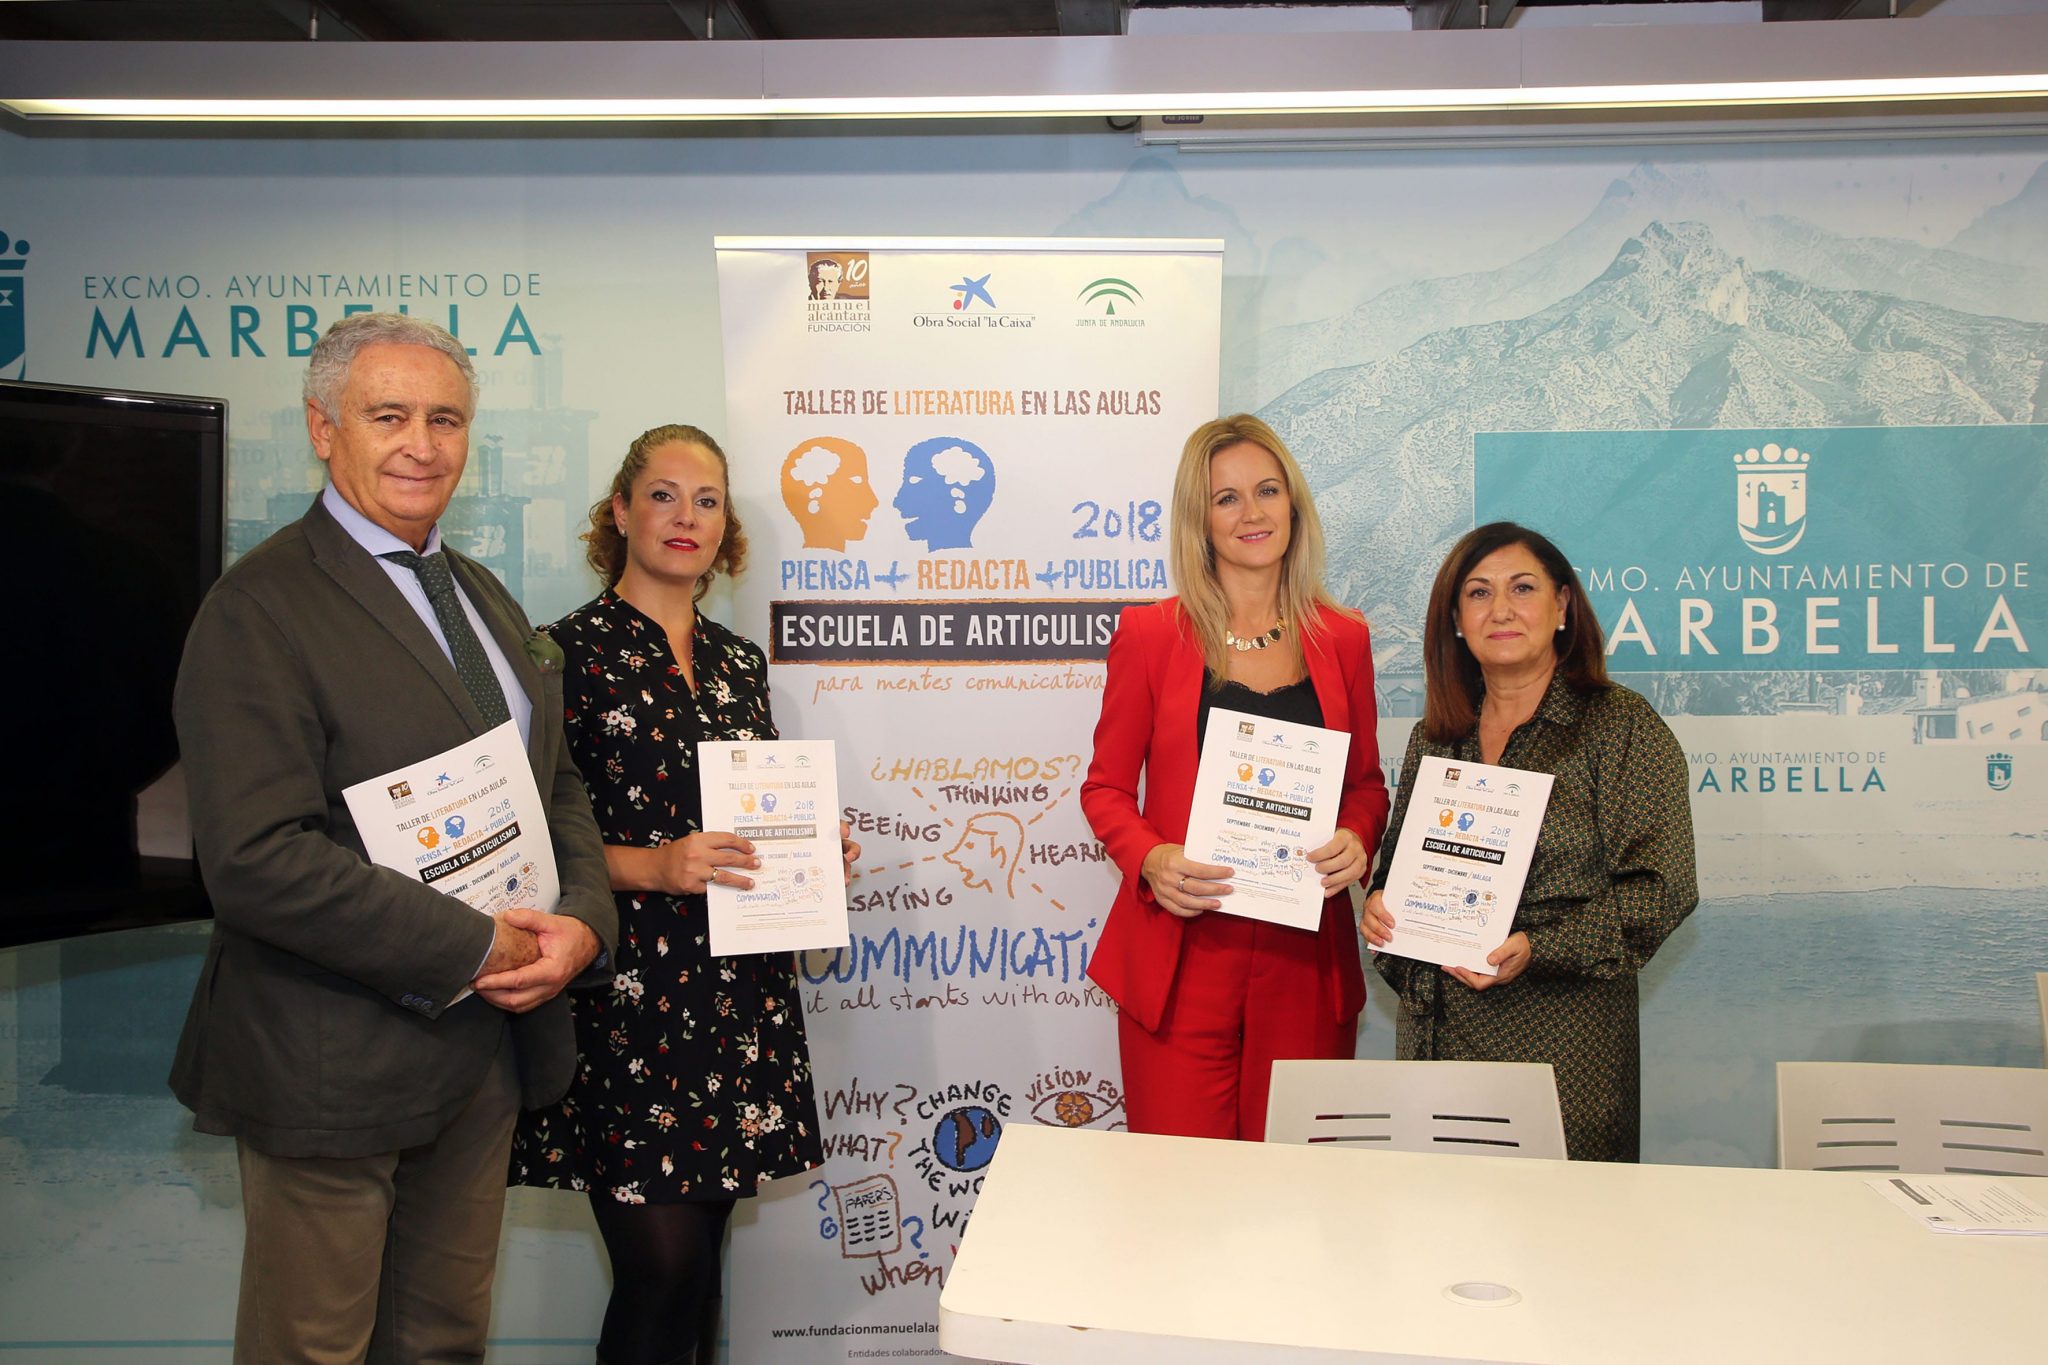 Marbella acoge la tercera edición de los ‘Talleres de Literatura en las aulas’